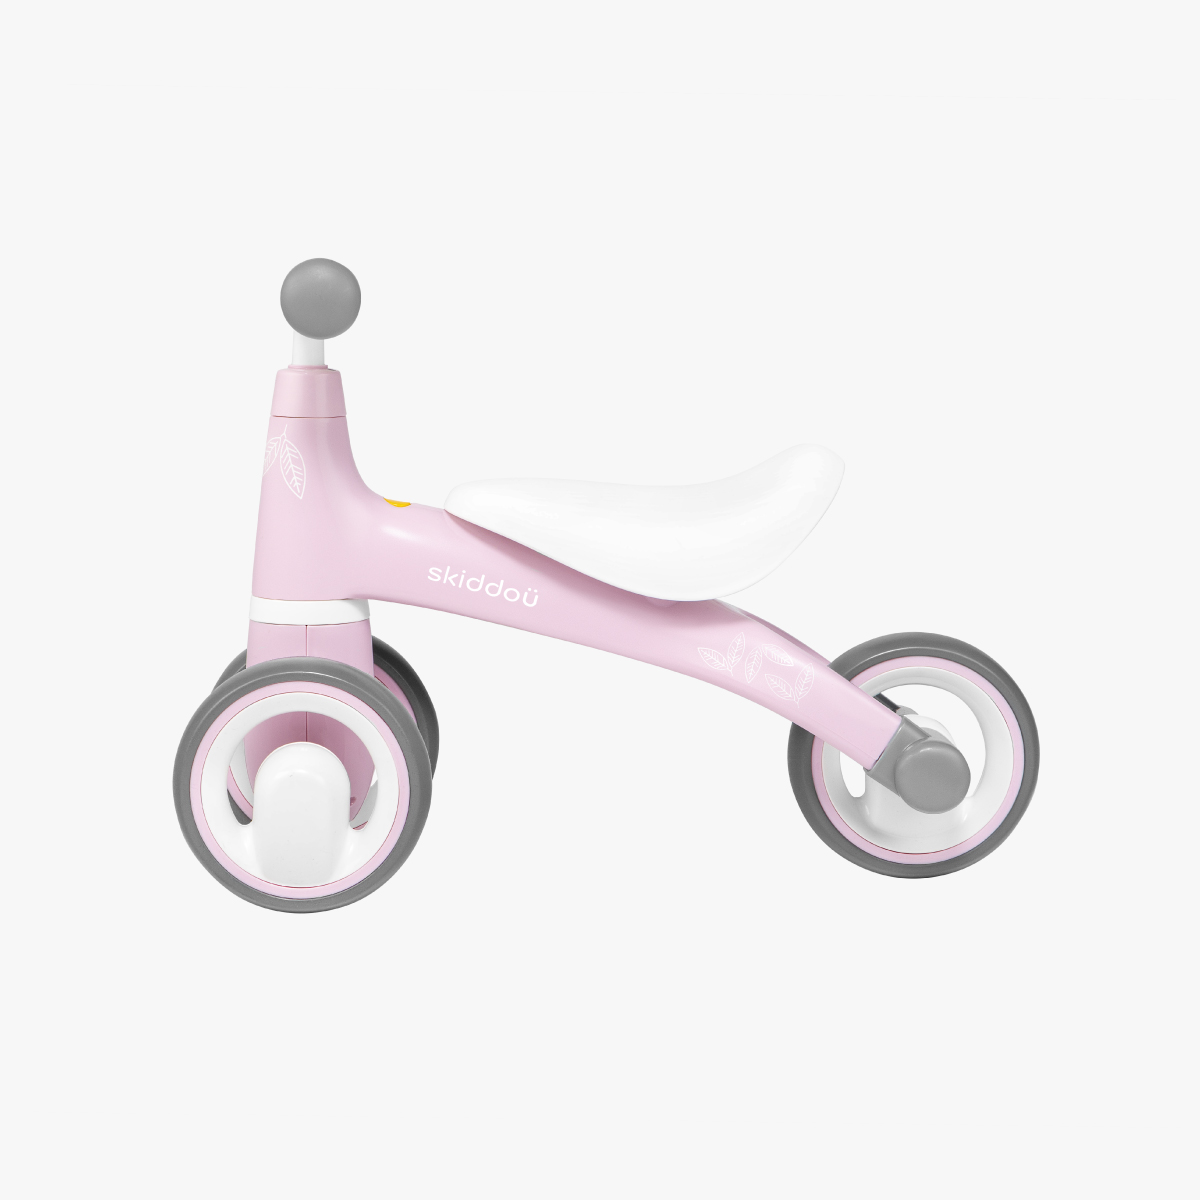 Lekki jeździk dla dzieci skiddou Berit keep pink